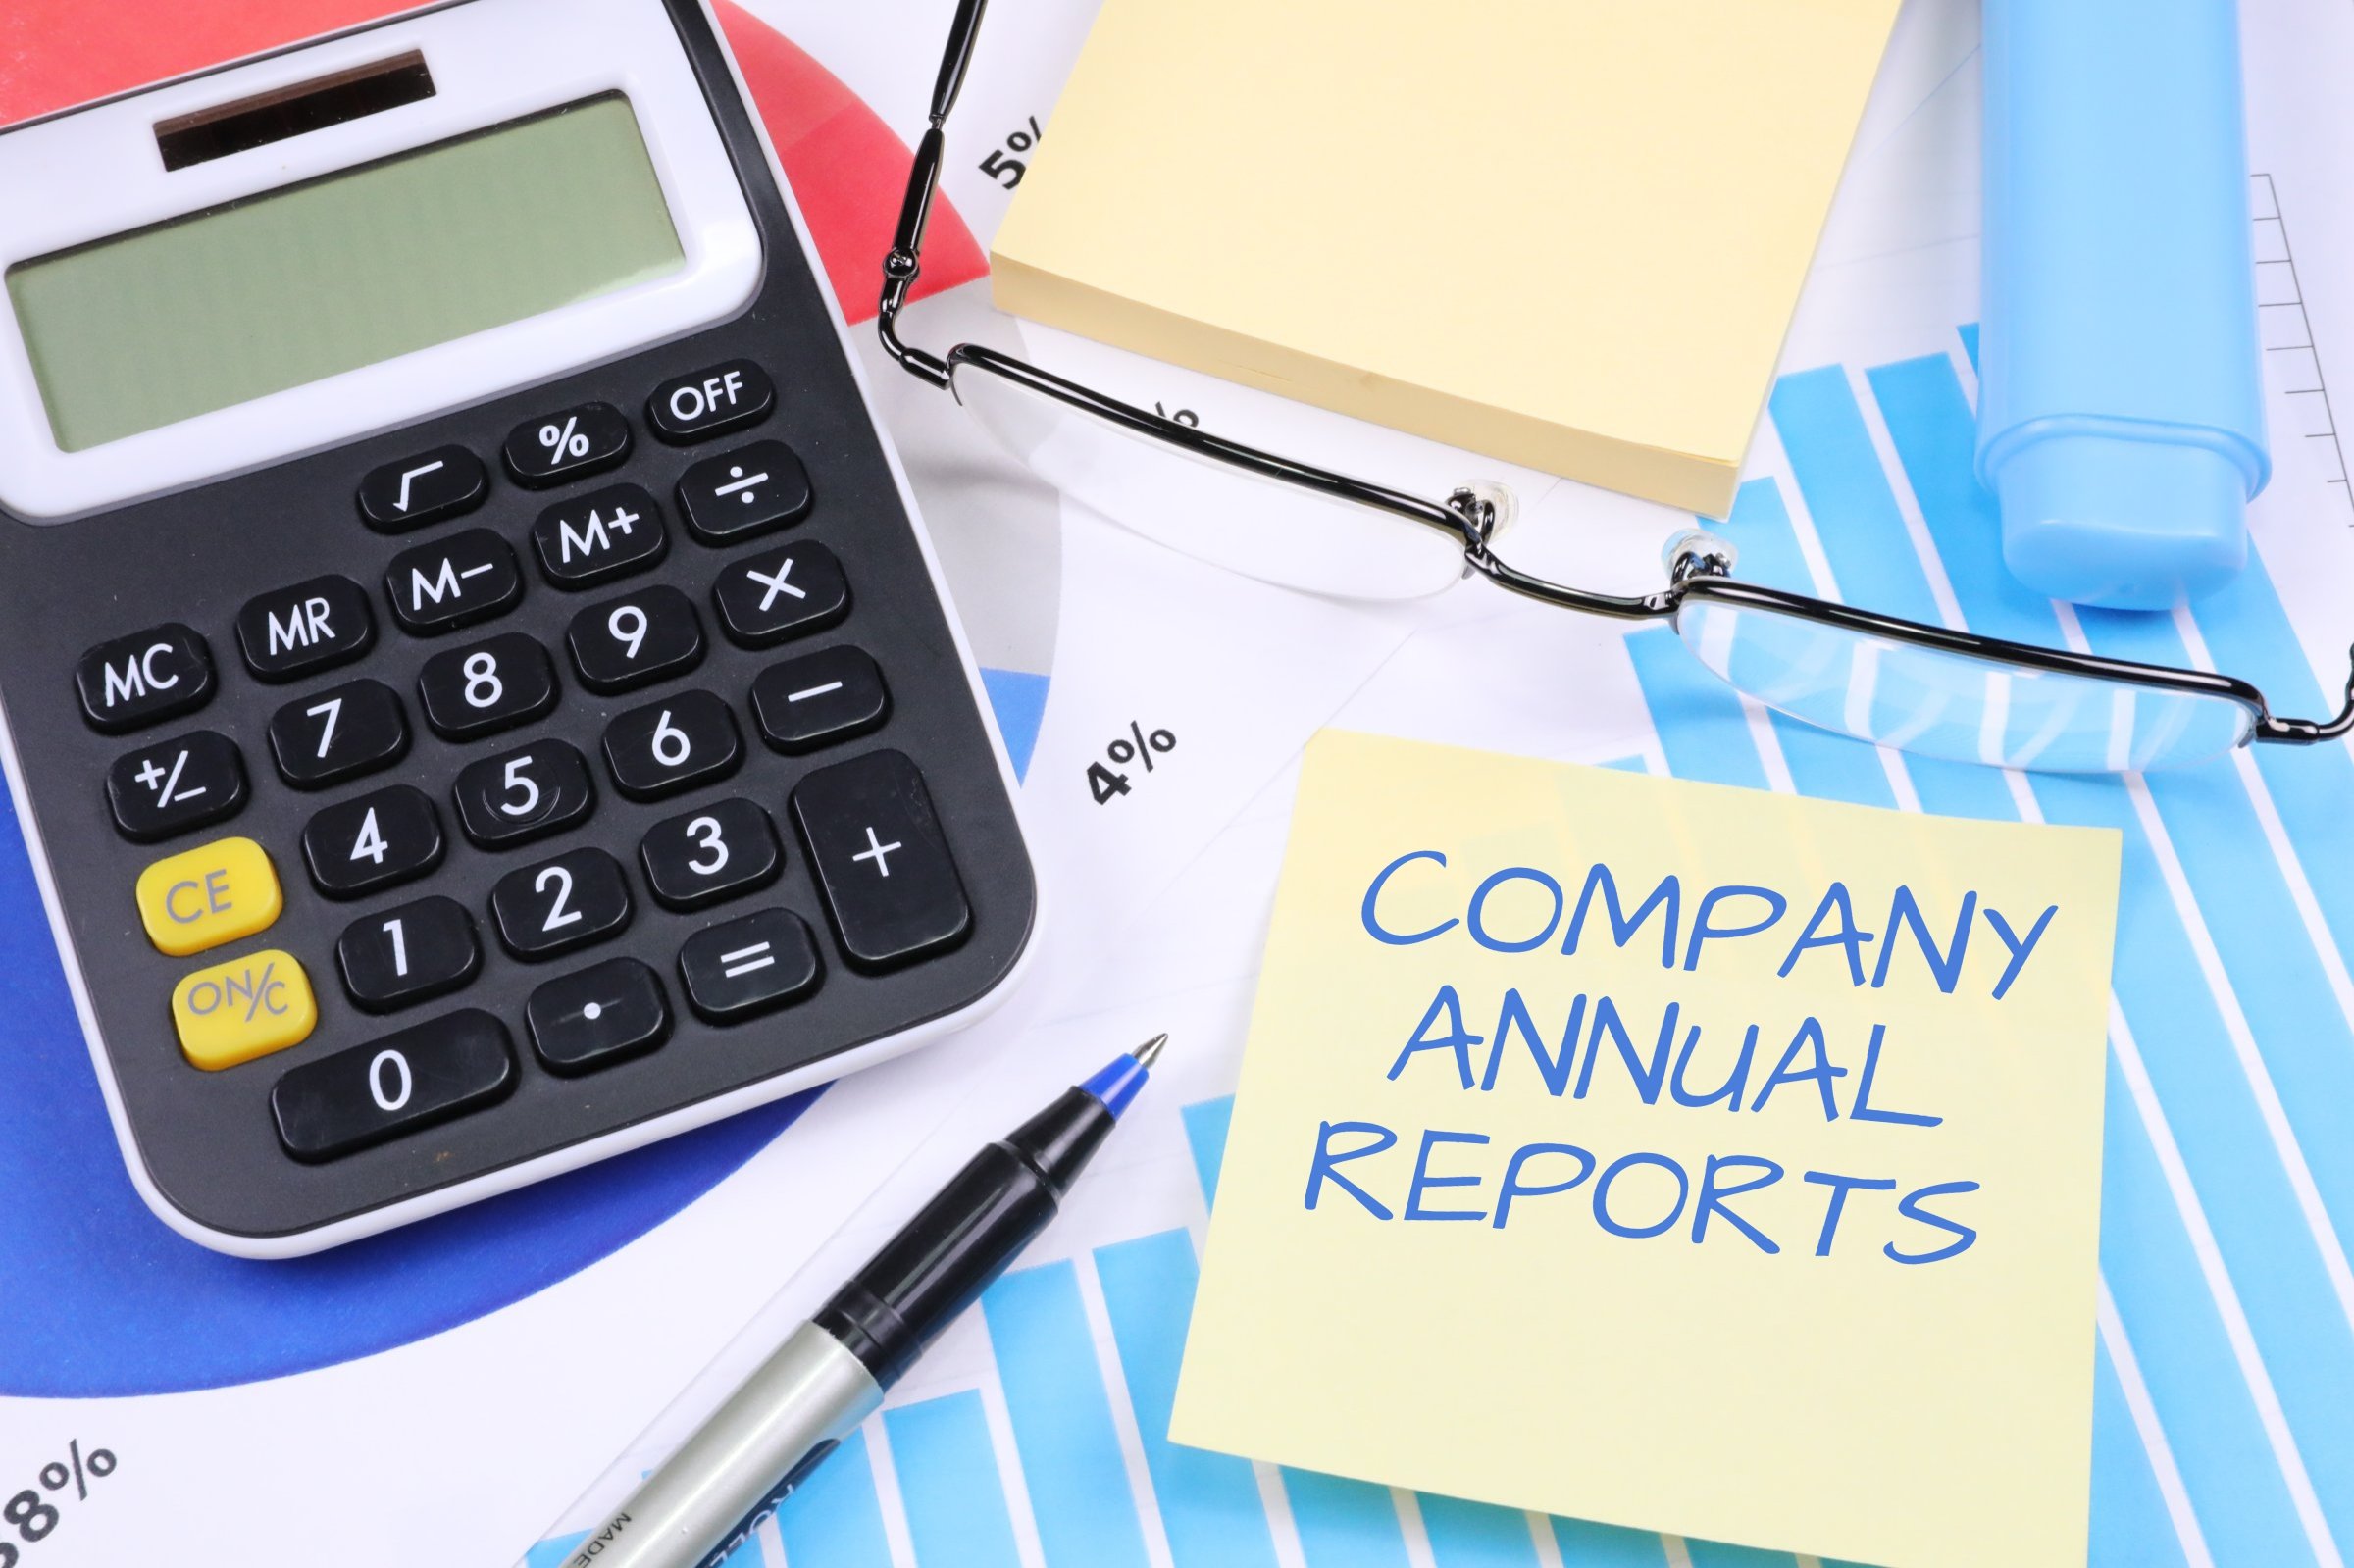 company annual reports